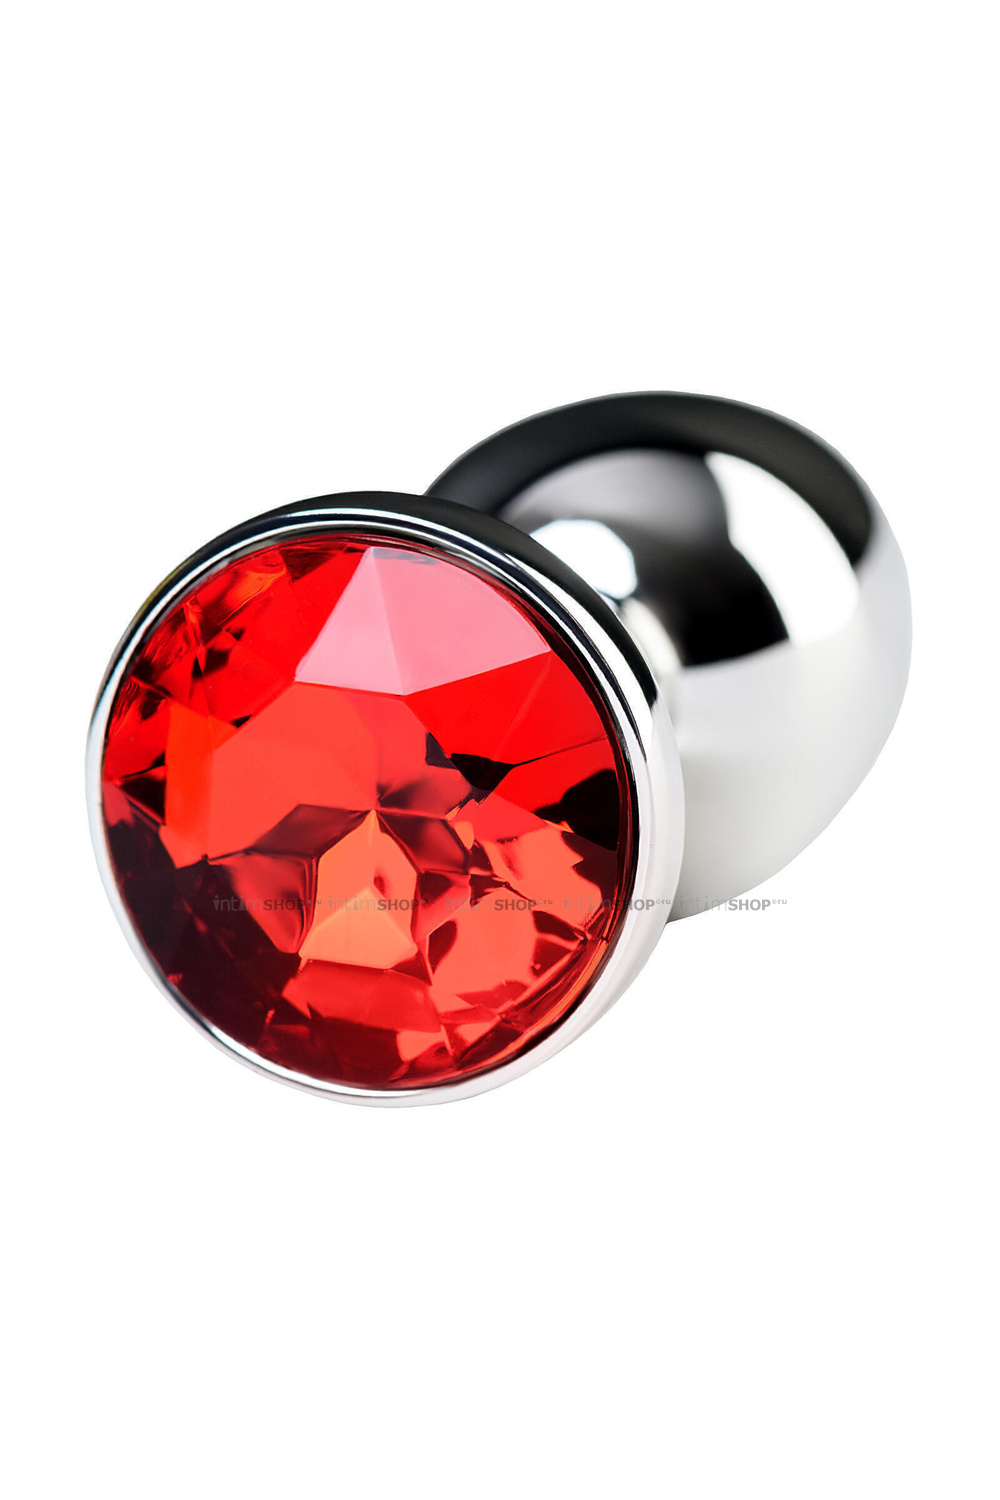 Анальная пробка Toyfa Metal с кристалом цвета рубин, 7,2 см, серебристый